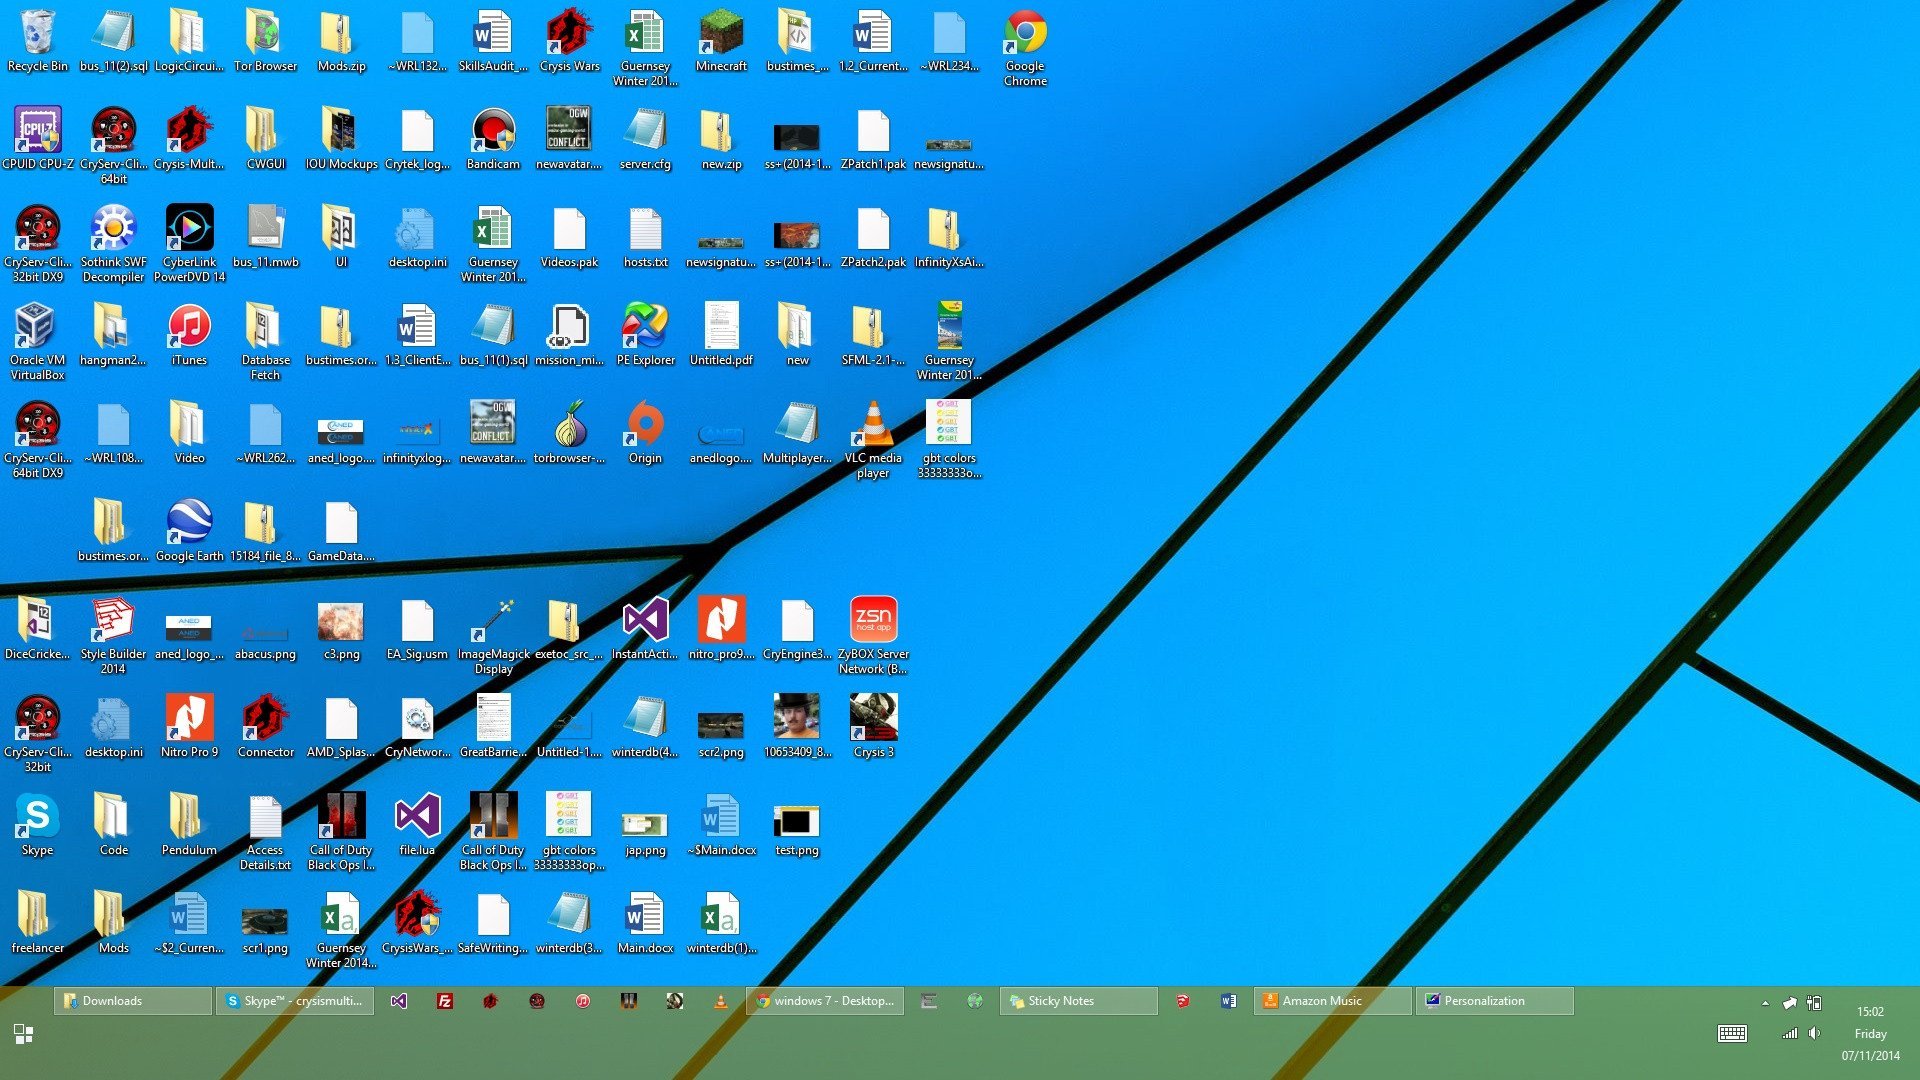 Windows галочки на ярлыках. Иконки на рабочий стол. Ярлыки на рабочем столе. Экран компьютера с приложениями. Windows 8 рабочий стол.